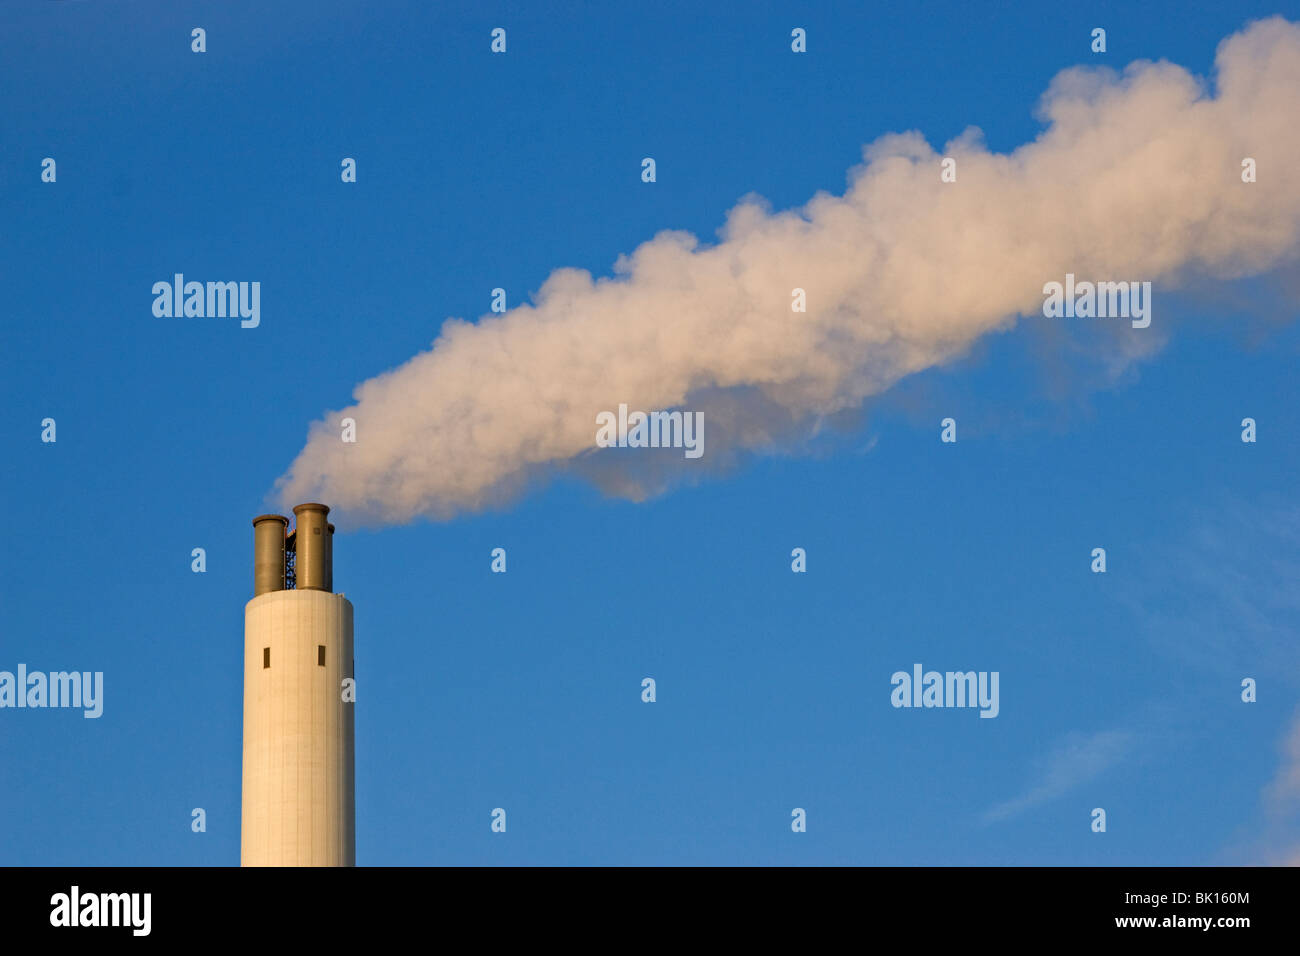 Smoking chimney with blue sky Stock Photo